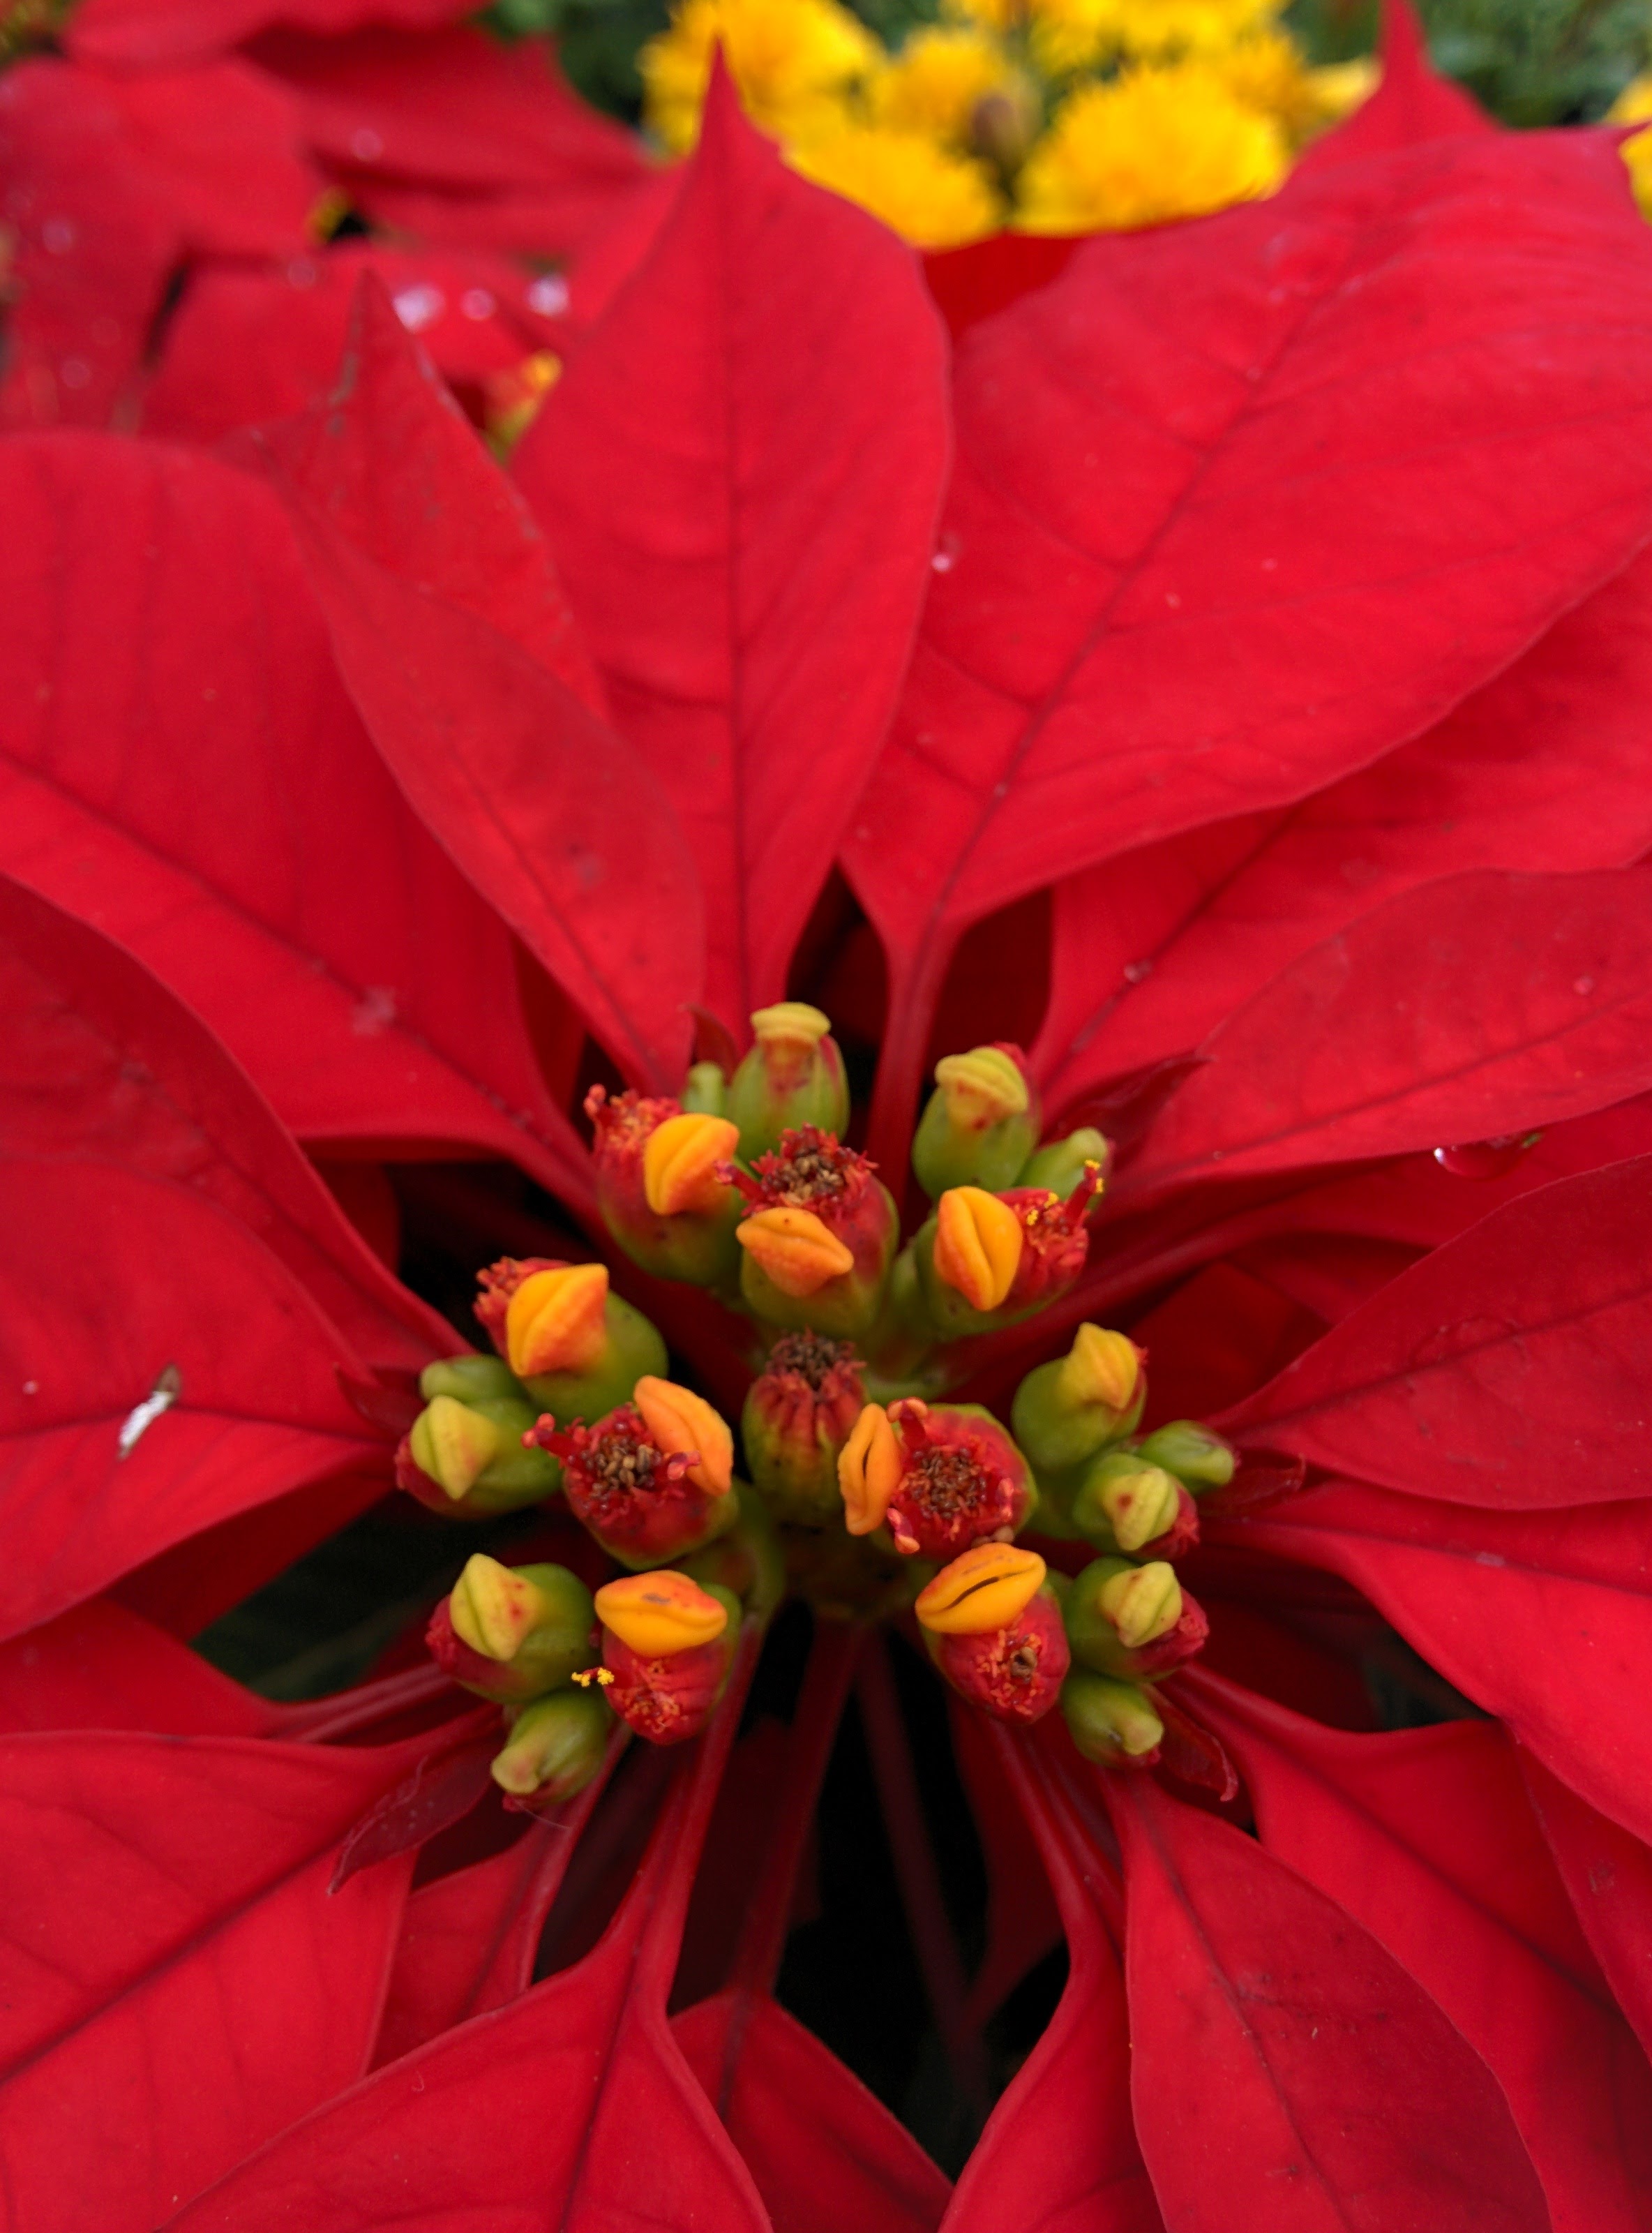 IMG_20151024_125520.jpg 꽃처럼 잎이 붉은색으로 물든 멕시코불꽃풀(포인세티아)